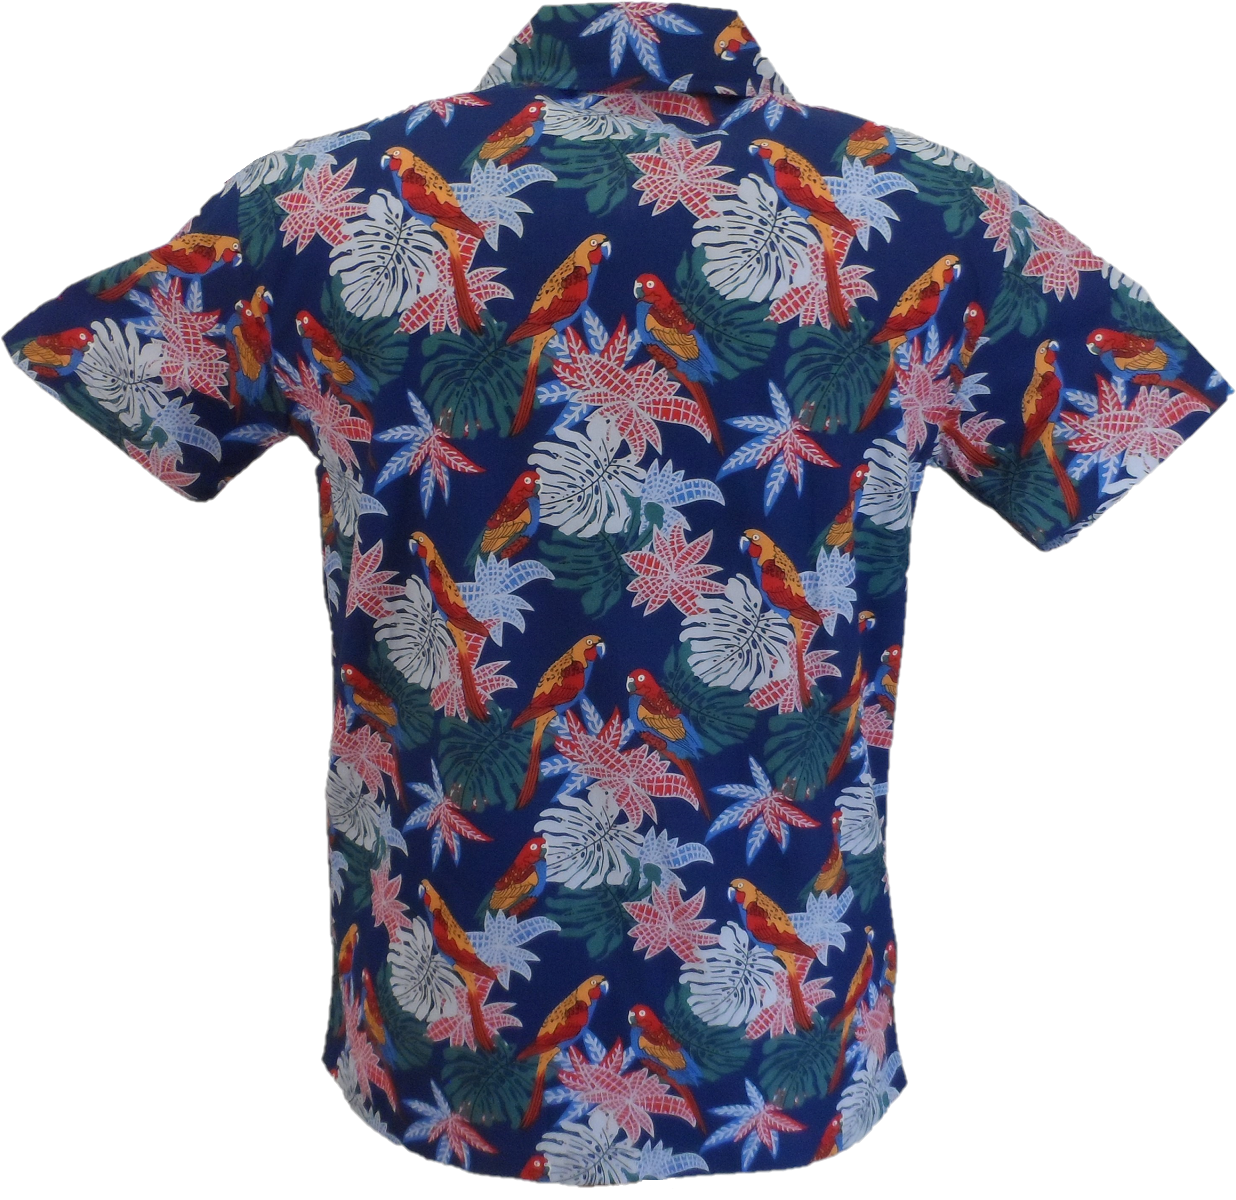 Relco chemise hawaïenne rétro perroquet bleu pour homme